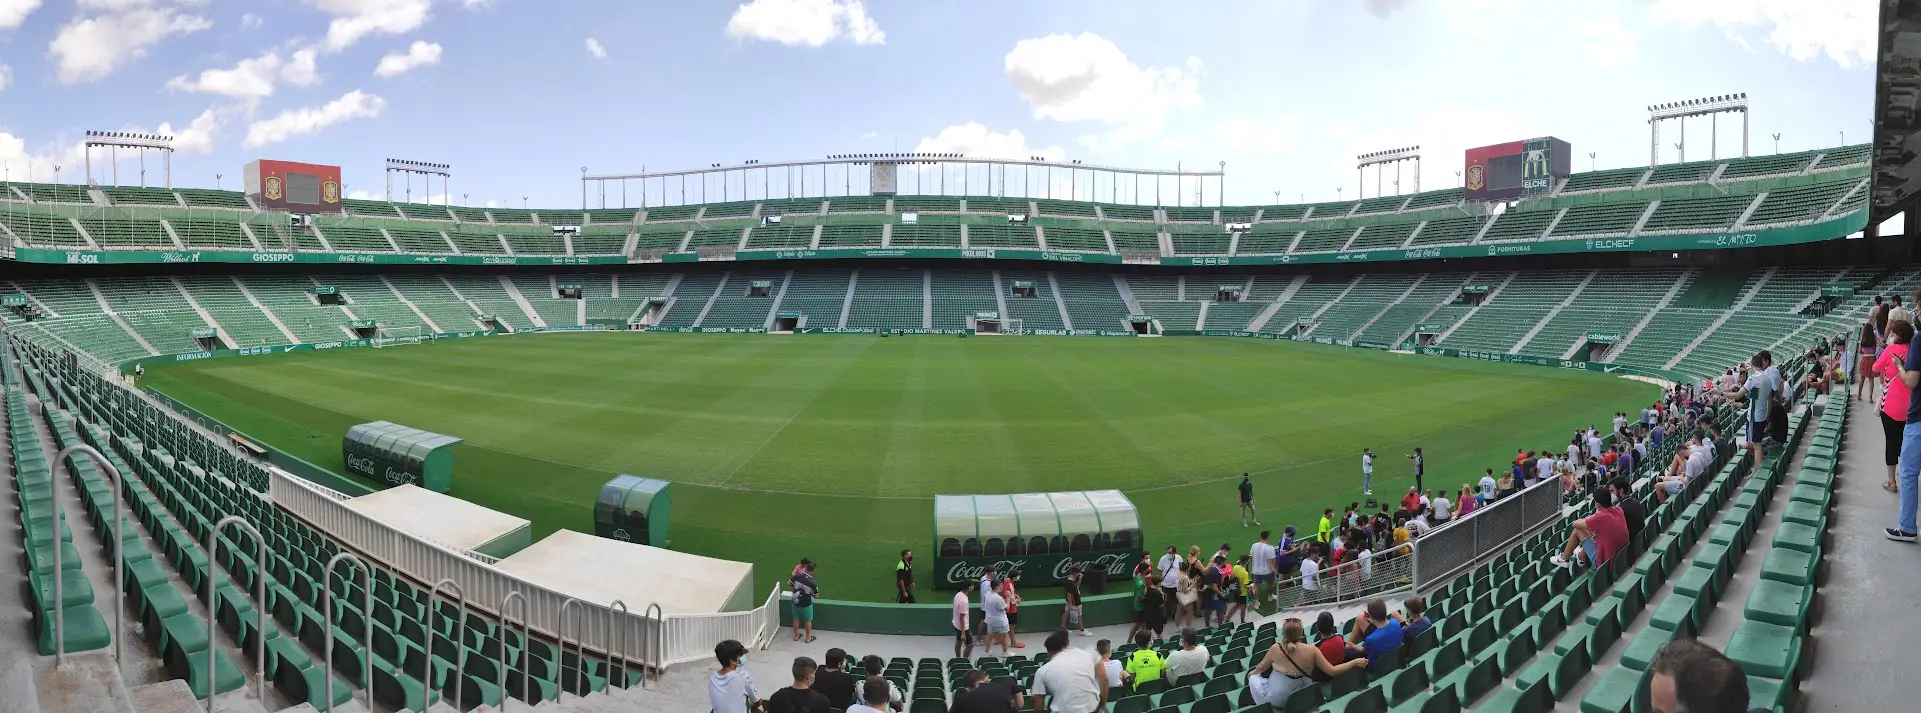 Sân vận động Estadio Manuel Martínez Valero – Ngôi nhà của câu lạc bộ Elche